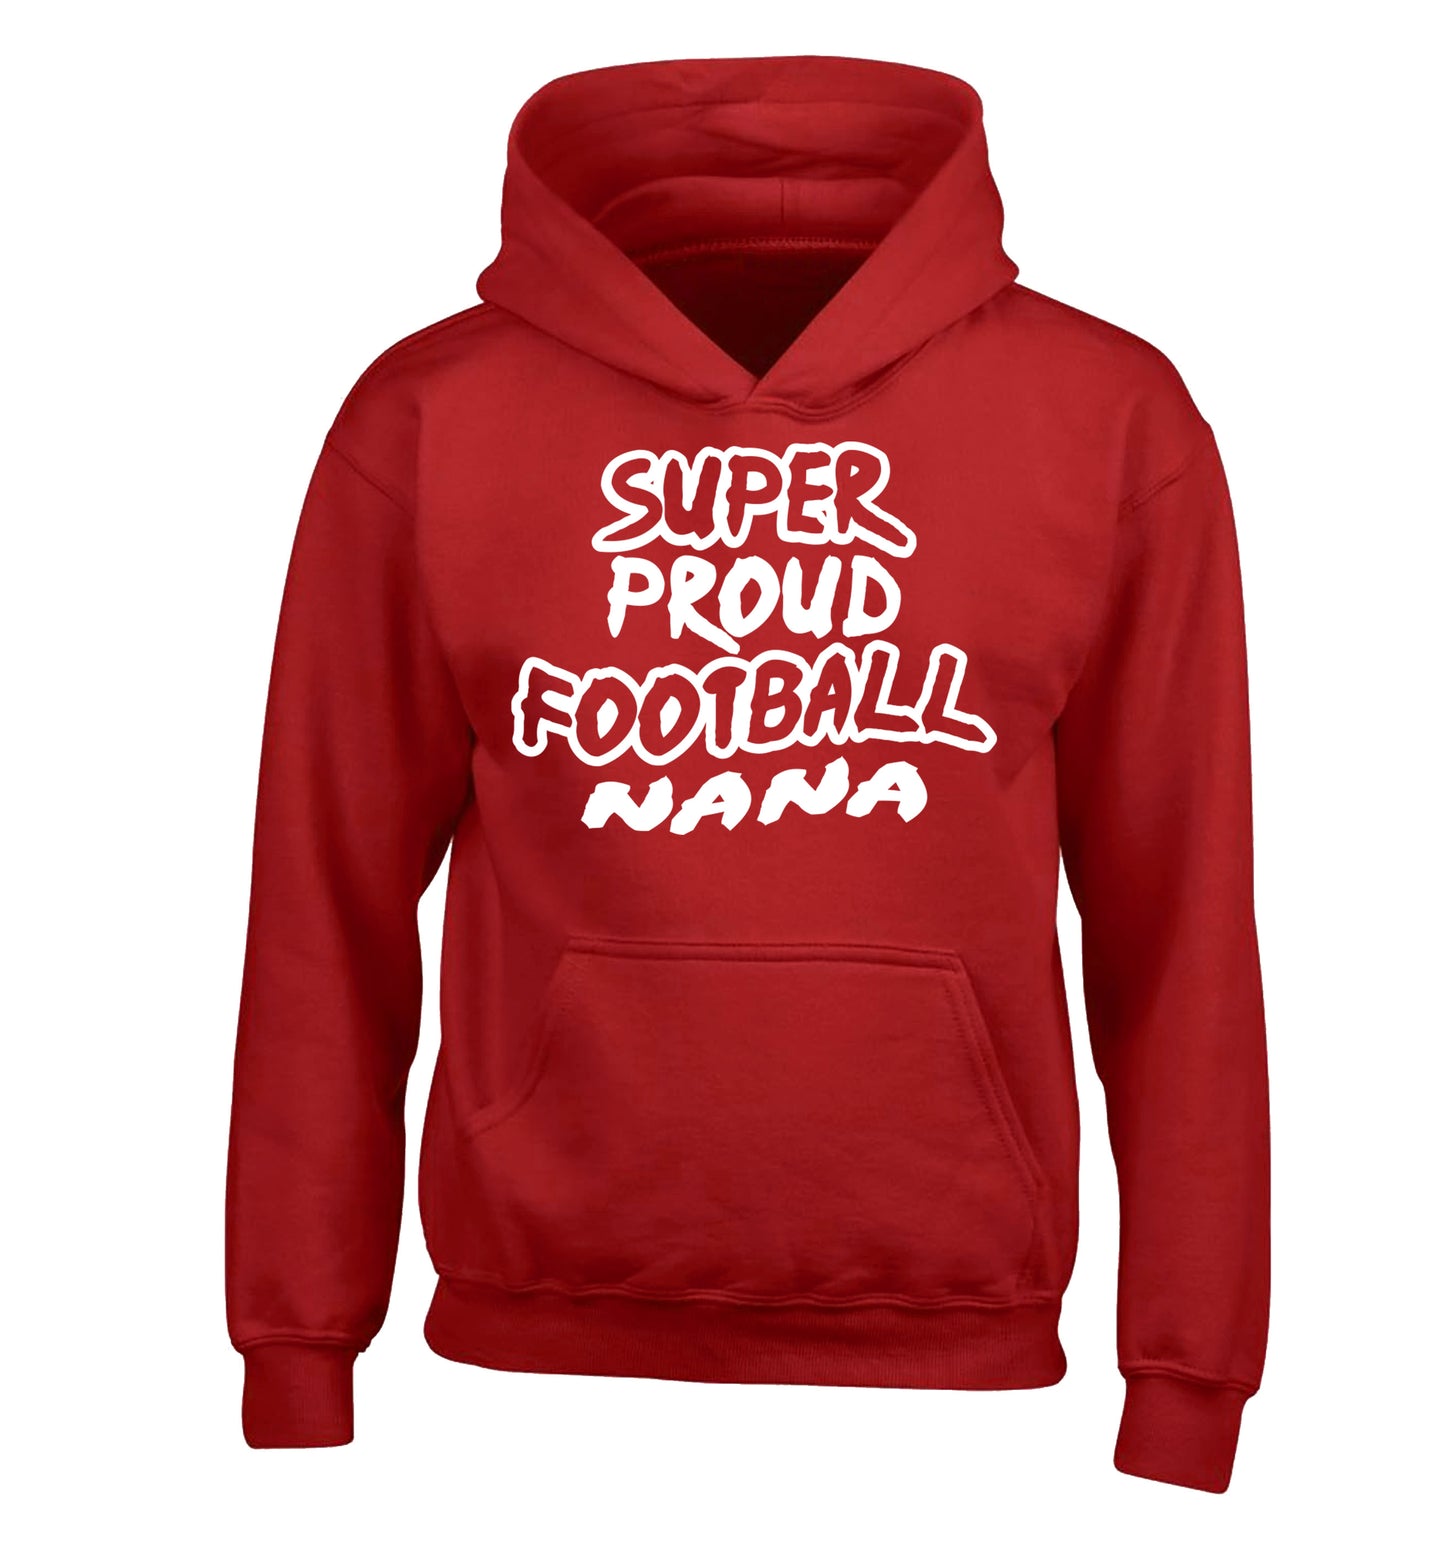 Super proud football nana children's red hoodie 12-14 Years